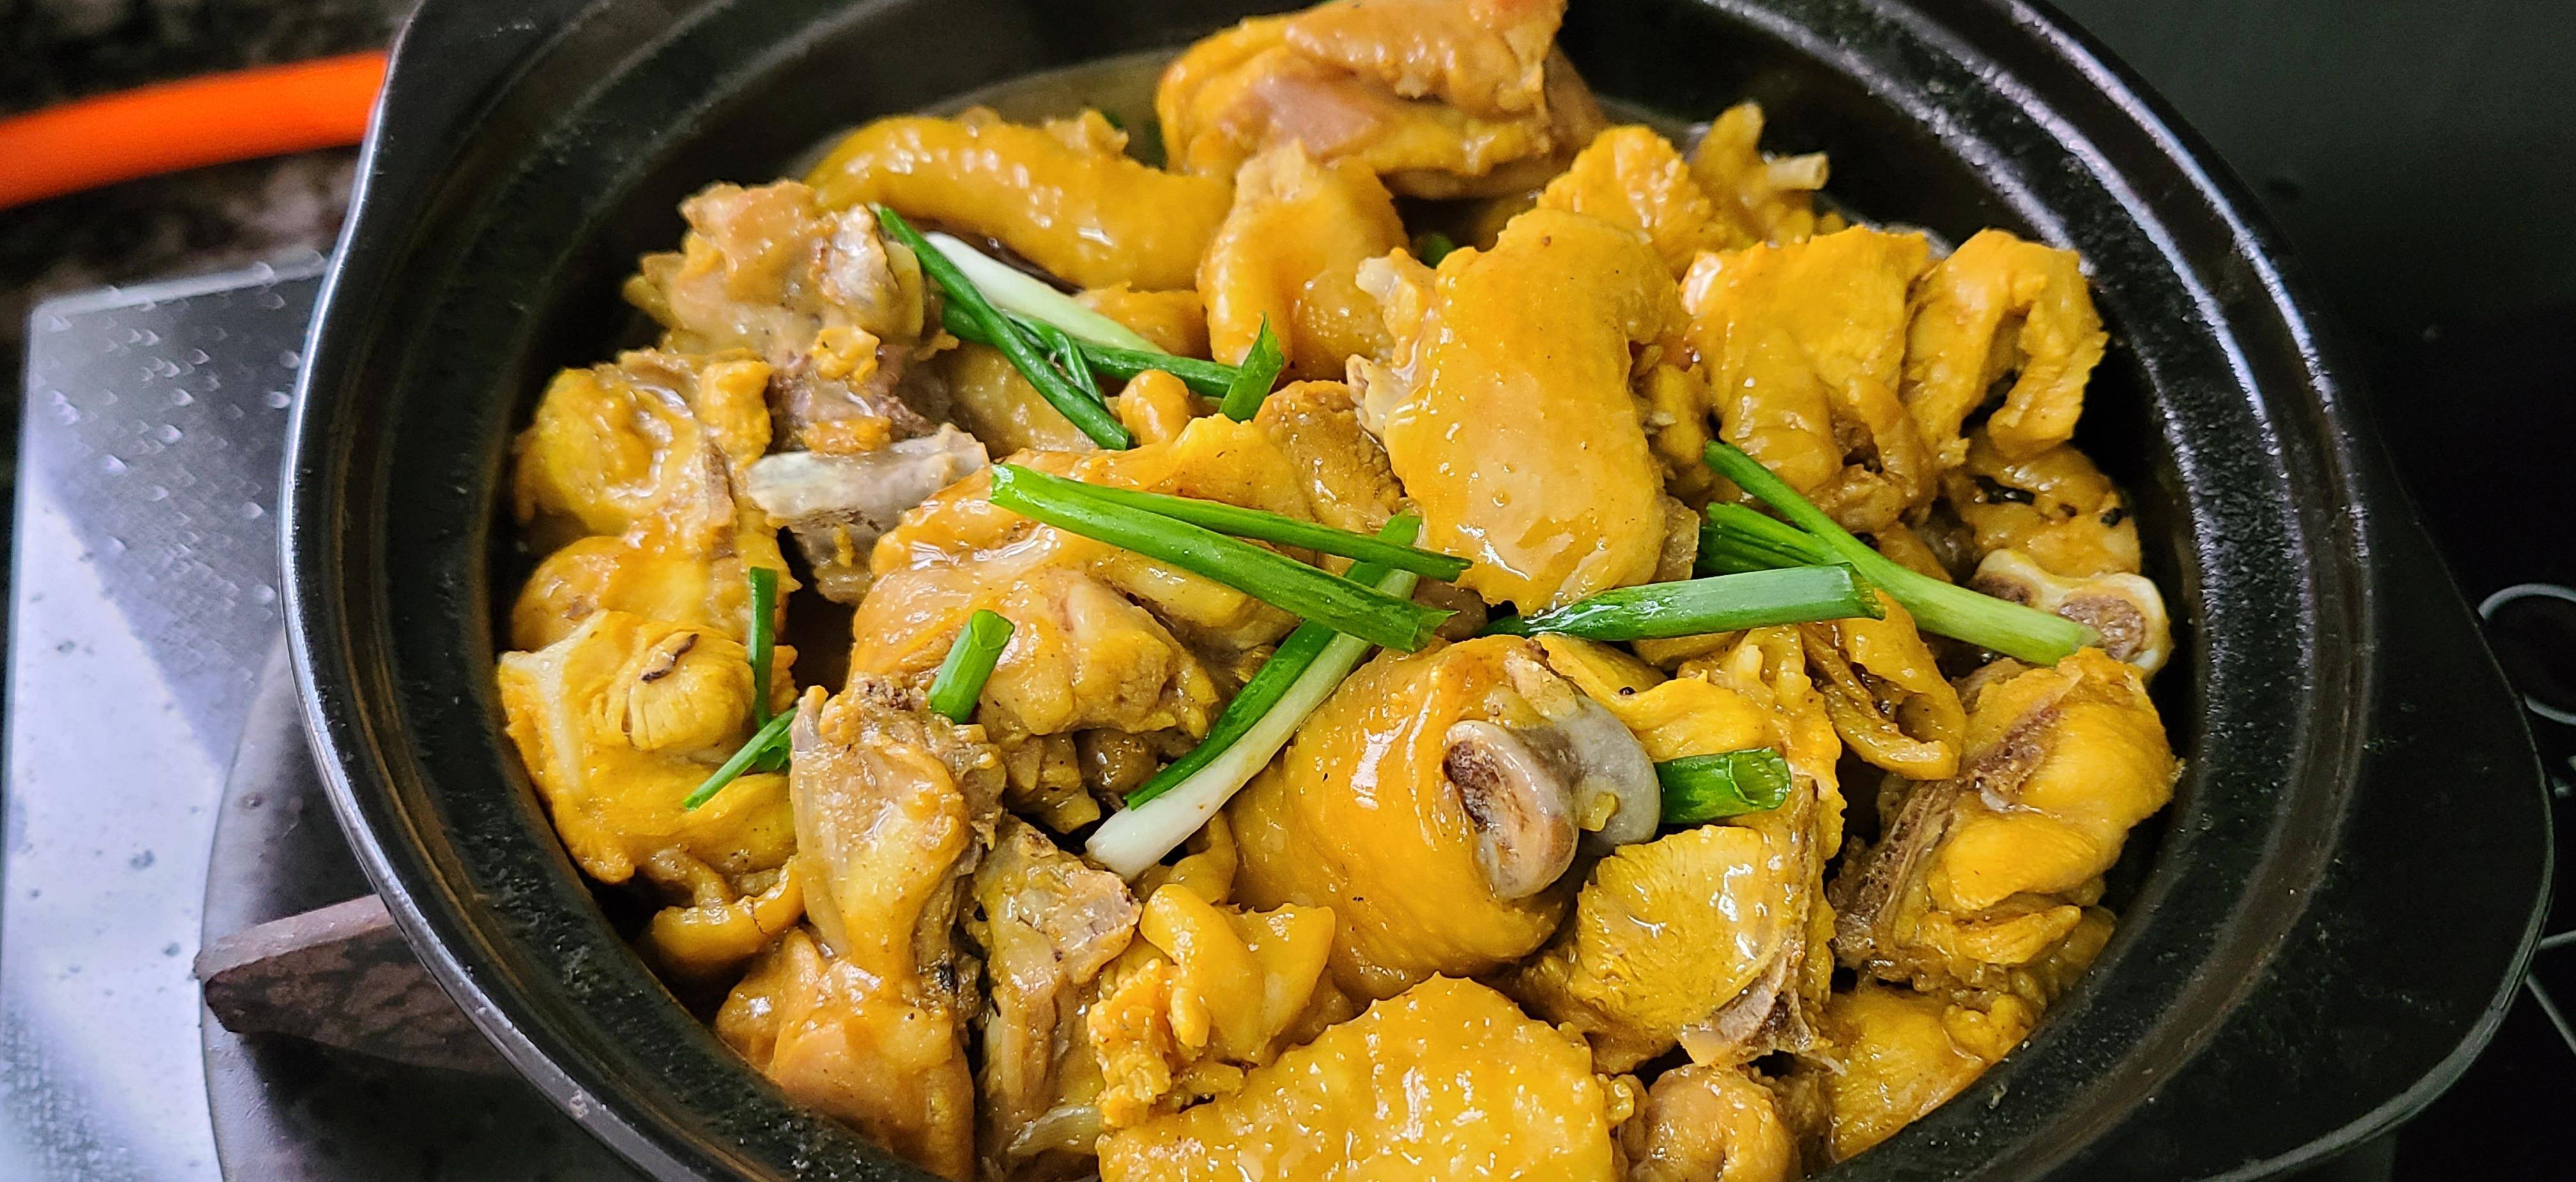 盐焗鸡煲,在广东出了名,好吃味美又简单